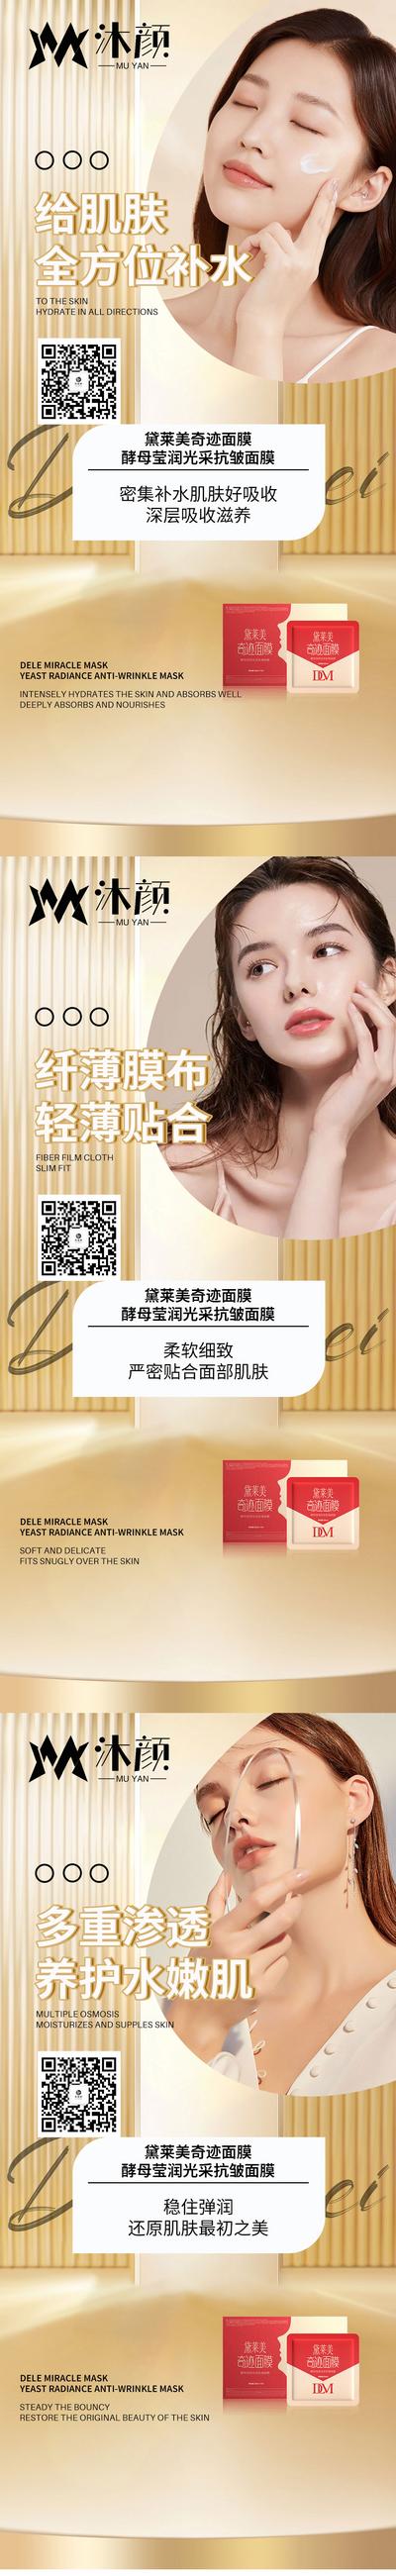 南门网 广告 海报 医美 面膜 系列 微商 美业 护肤 产品 营销 化妆品 修复 美白 系列